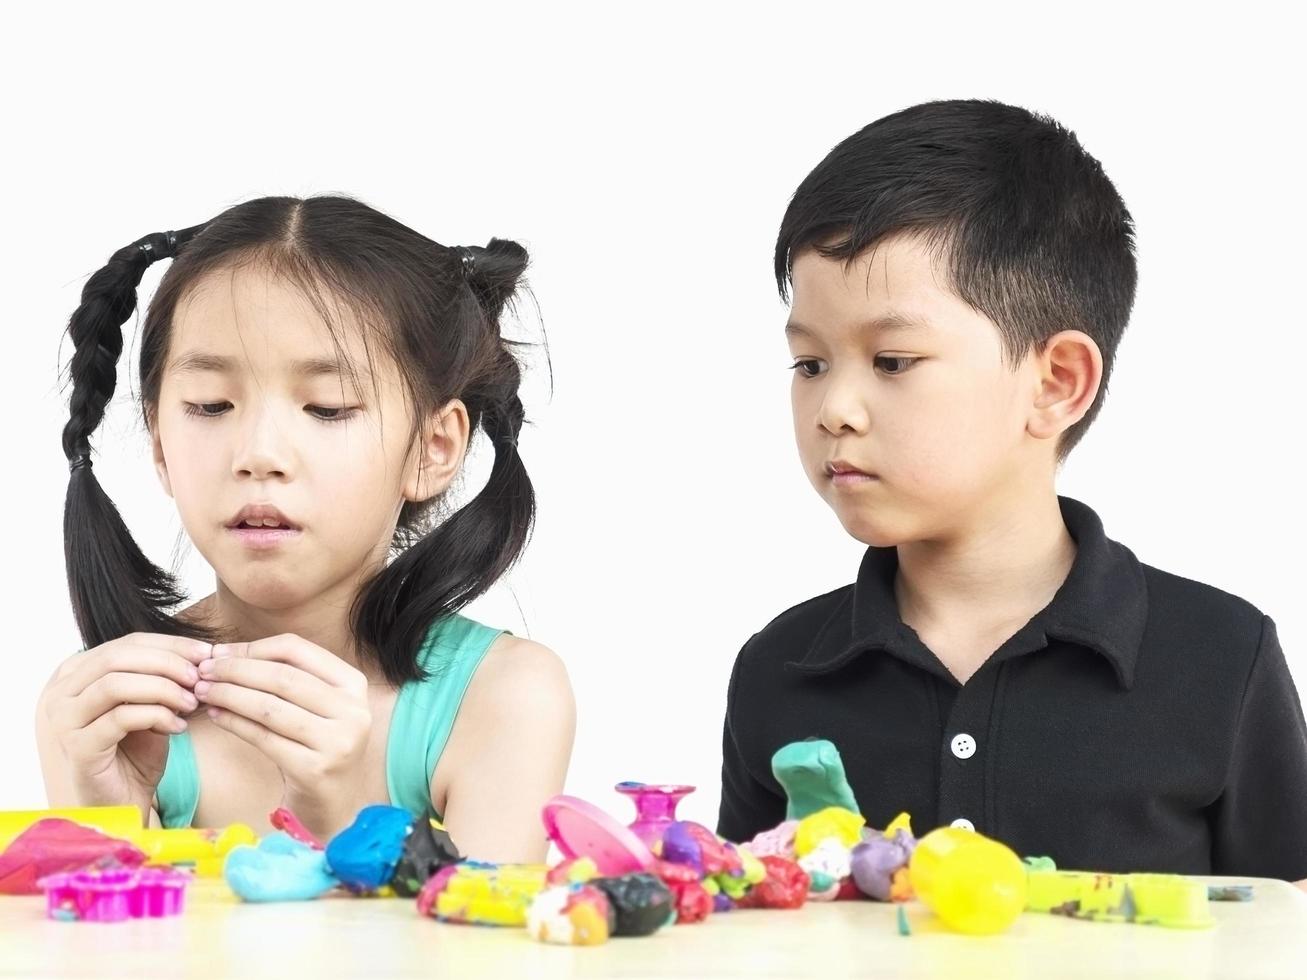 enfoque selectivo de niños asiáticos felices jugando juguetes de arcilla coloridos foto